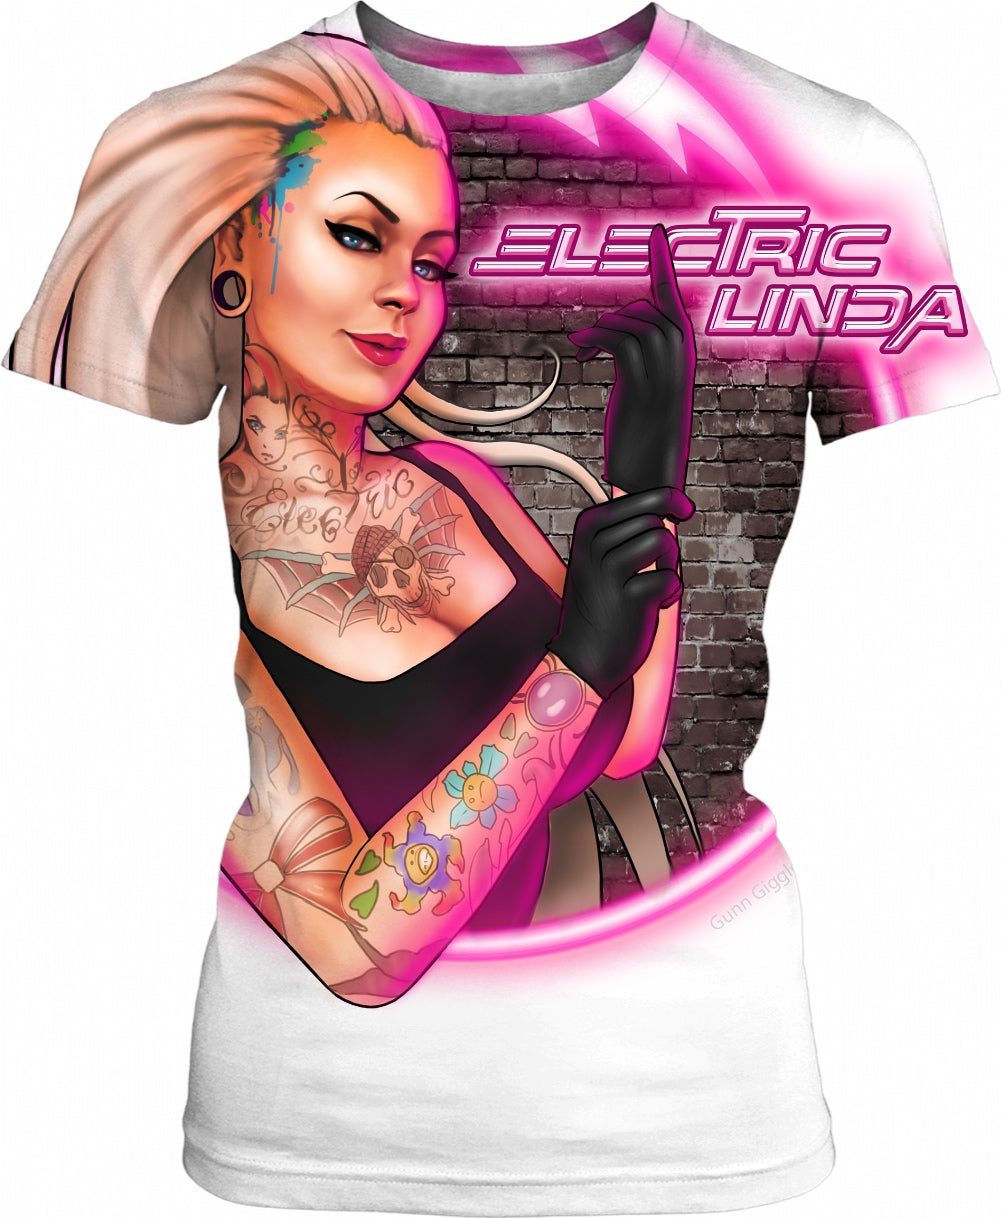 Electric Linda Womens T-shirt - Electric Linda